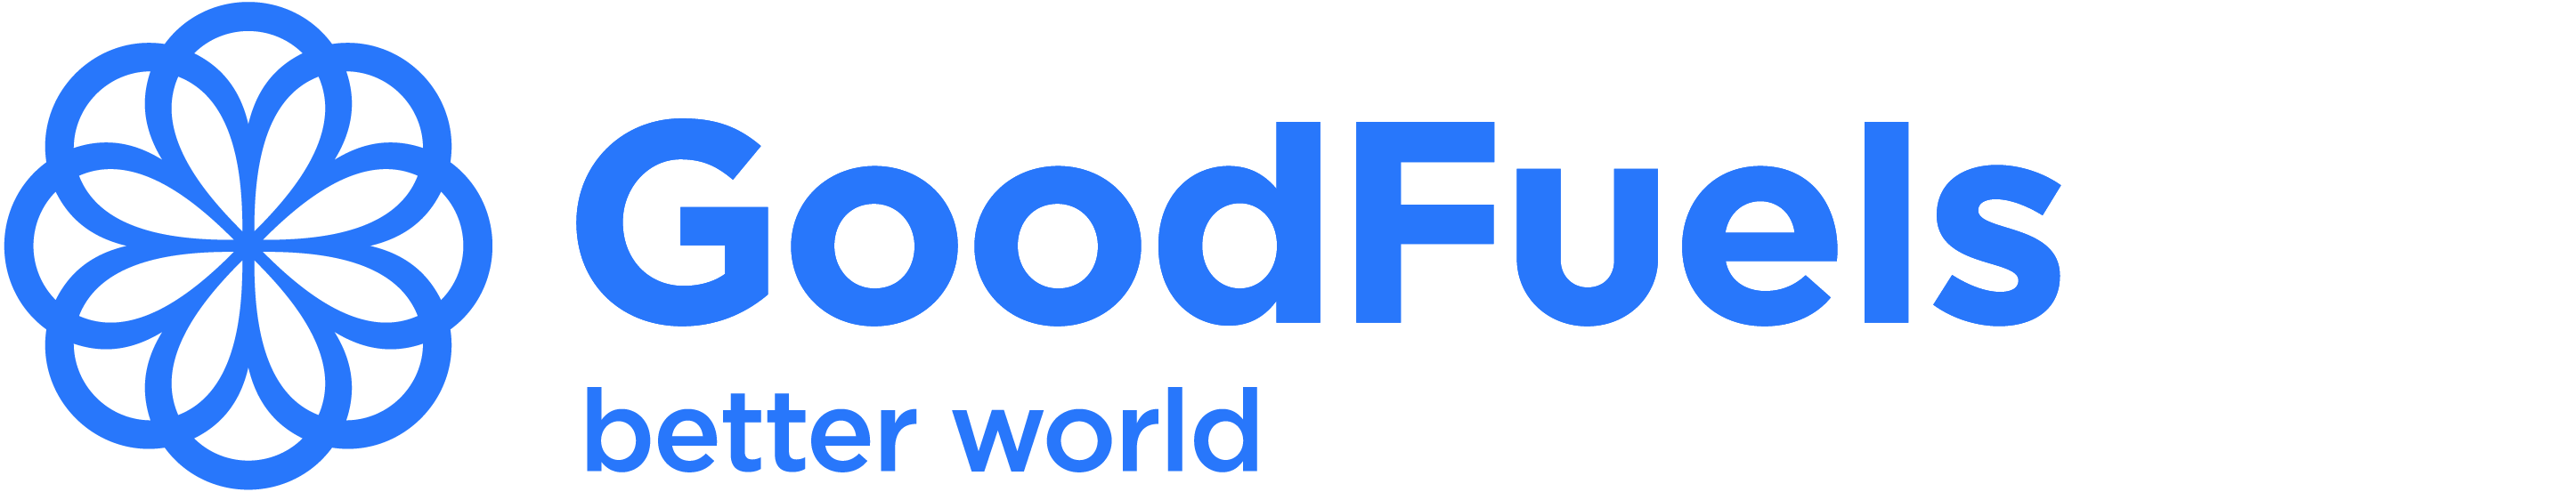 Logo_GoodFuels_blue_rgb_large